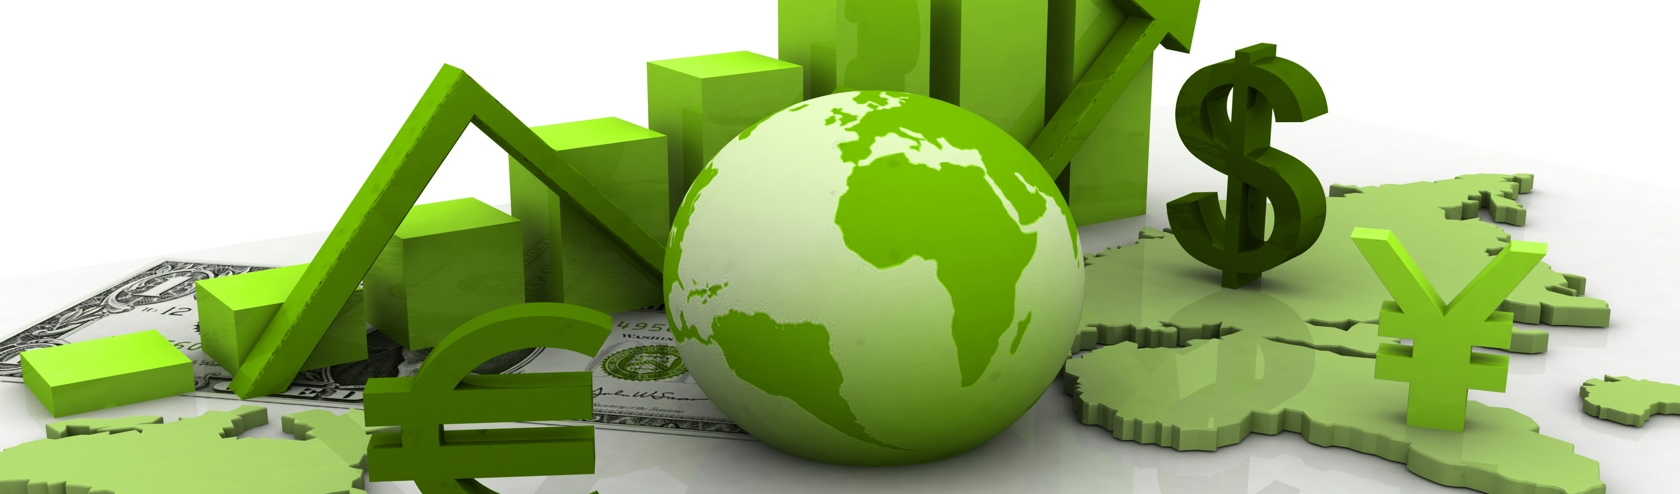 Amyra El Khalili | “Economia verde”: Entenda como novo modelo econômico pode ser prejudicial para América Latina e Caribe